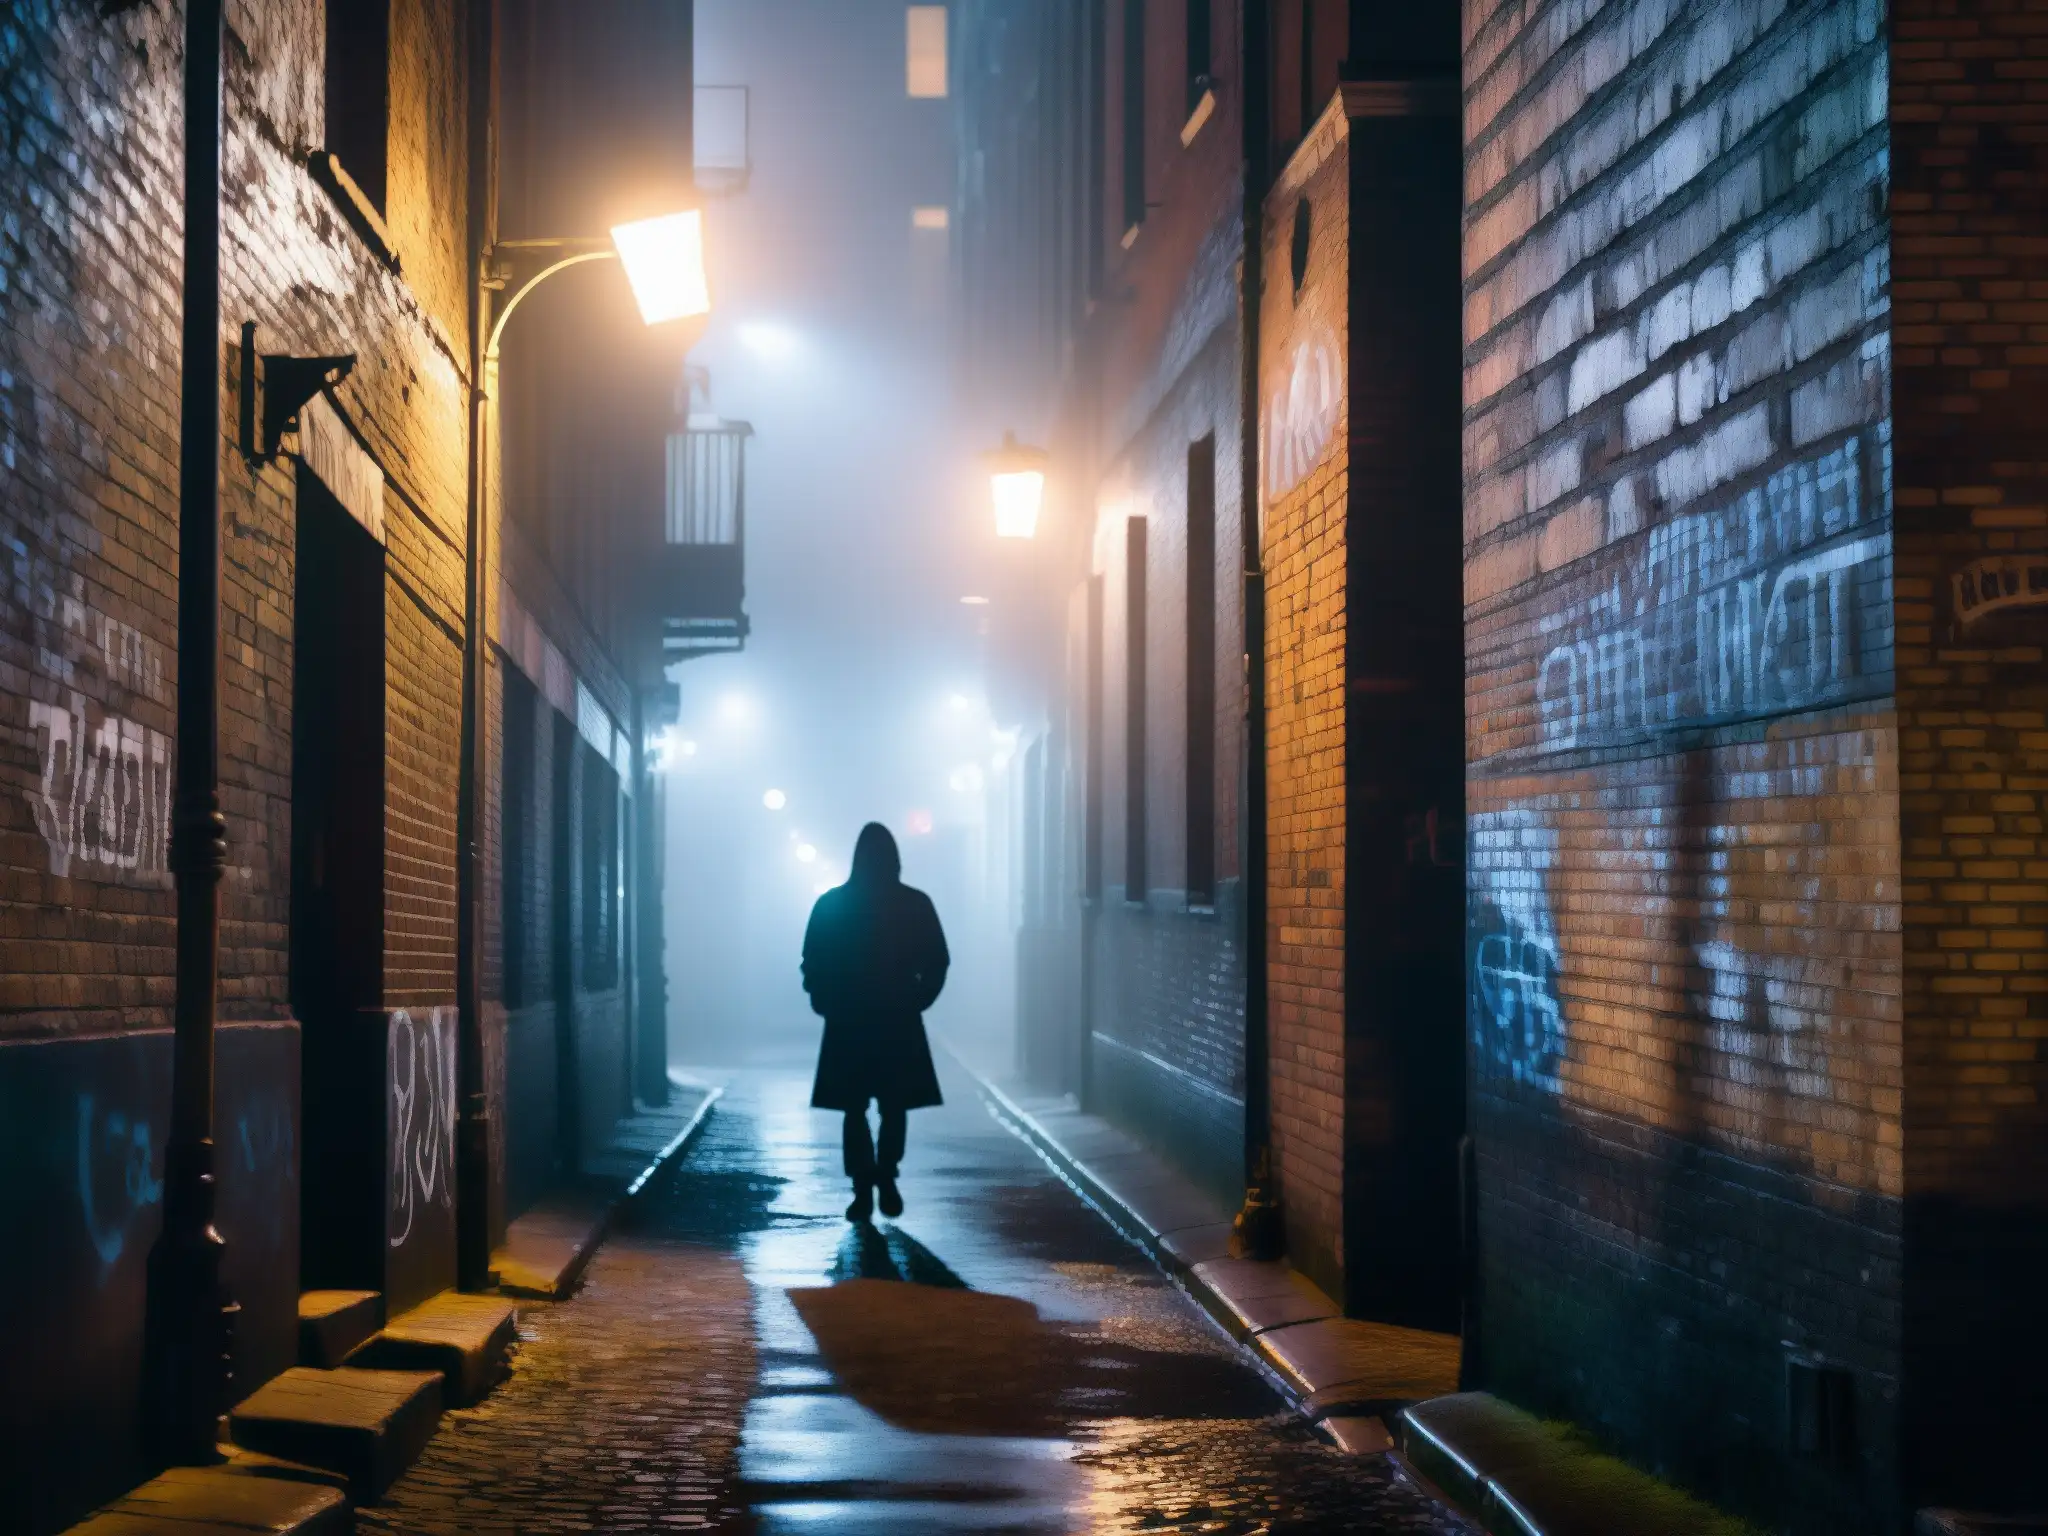 Una misteriosa callejuela urbana de noche, con niebla y siluetas, evocando el origen literario de leyendas urbanas